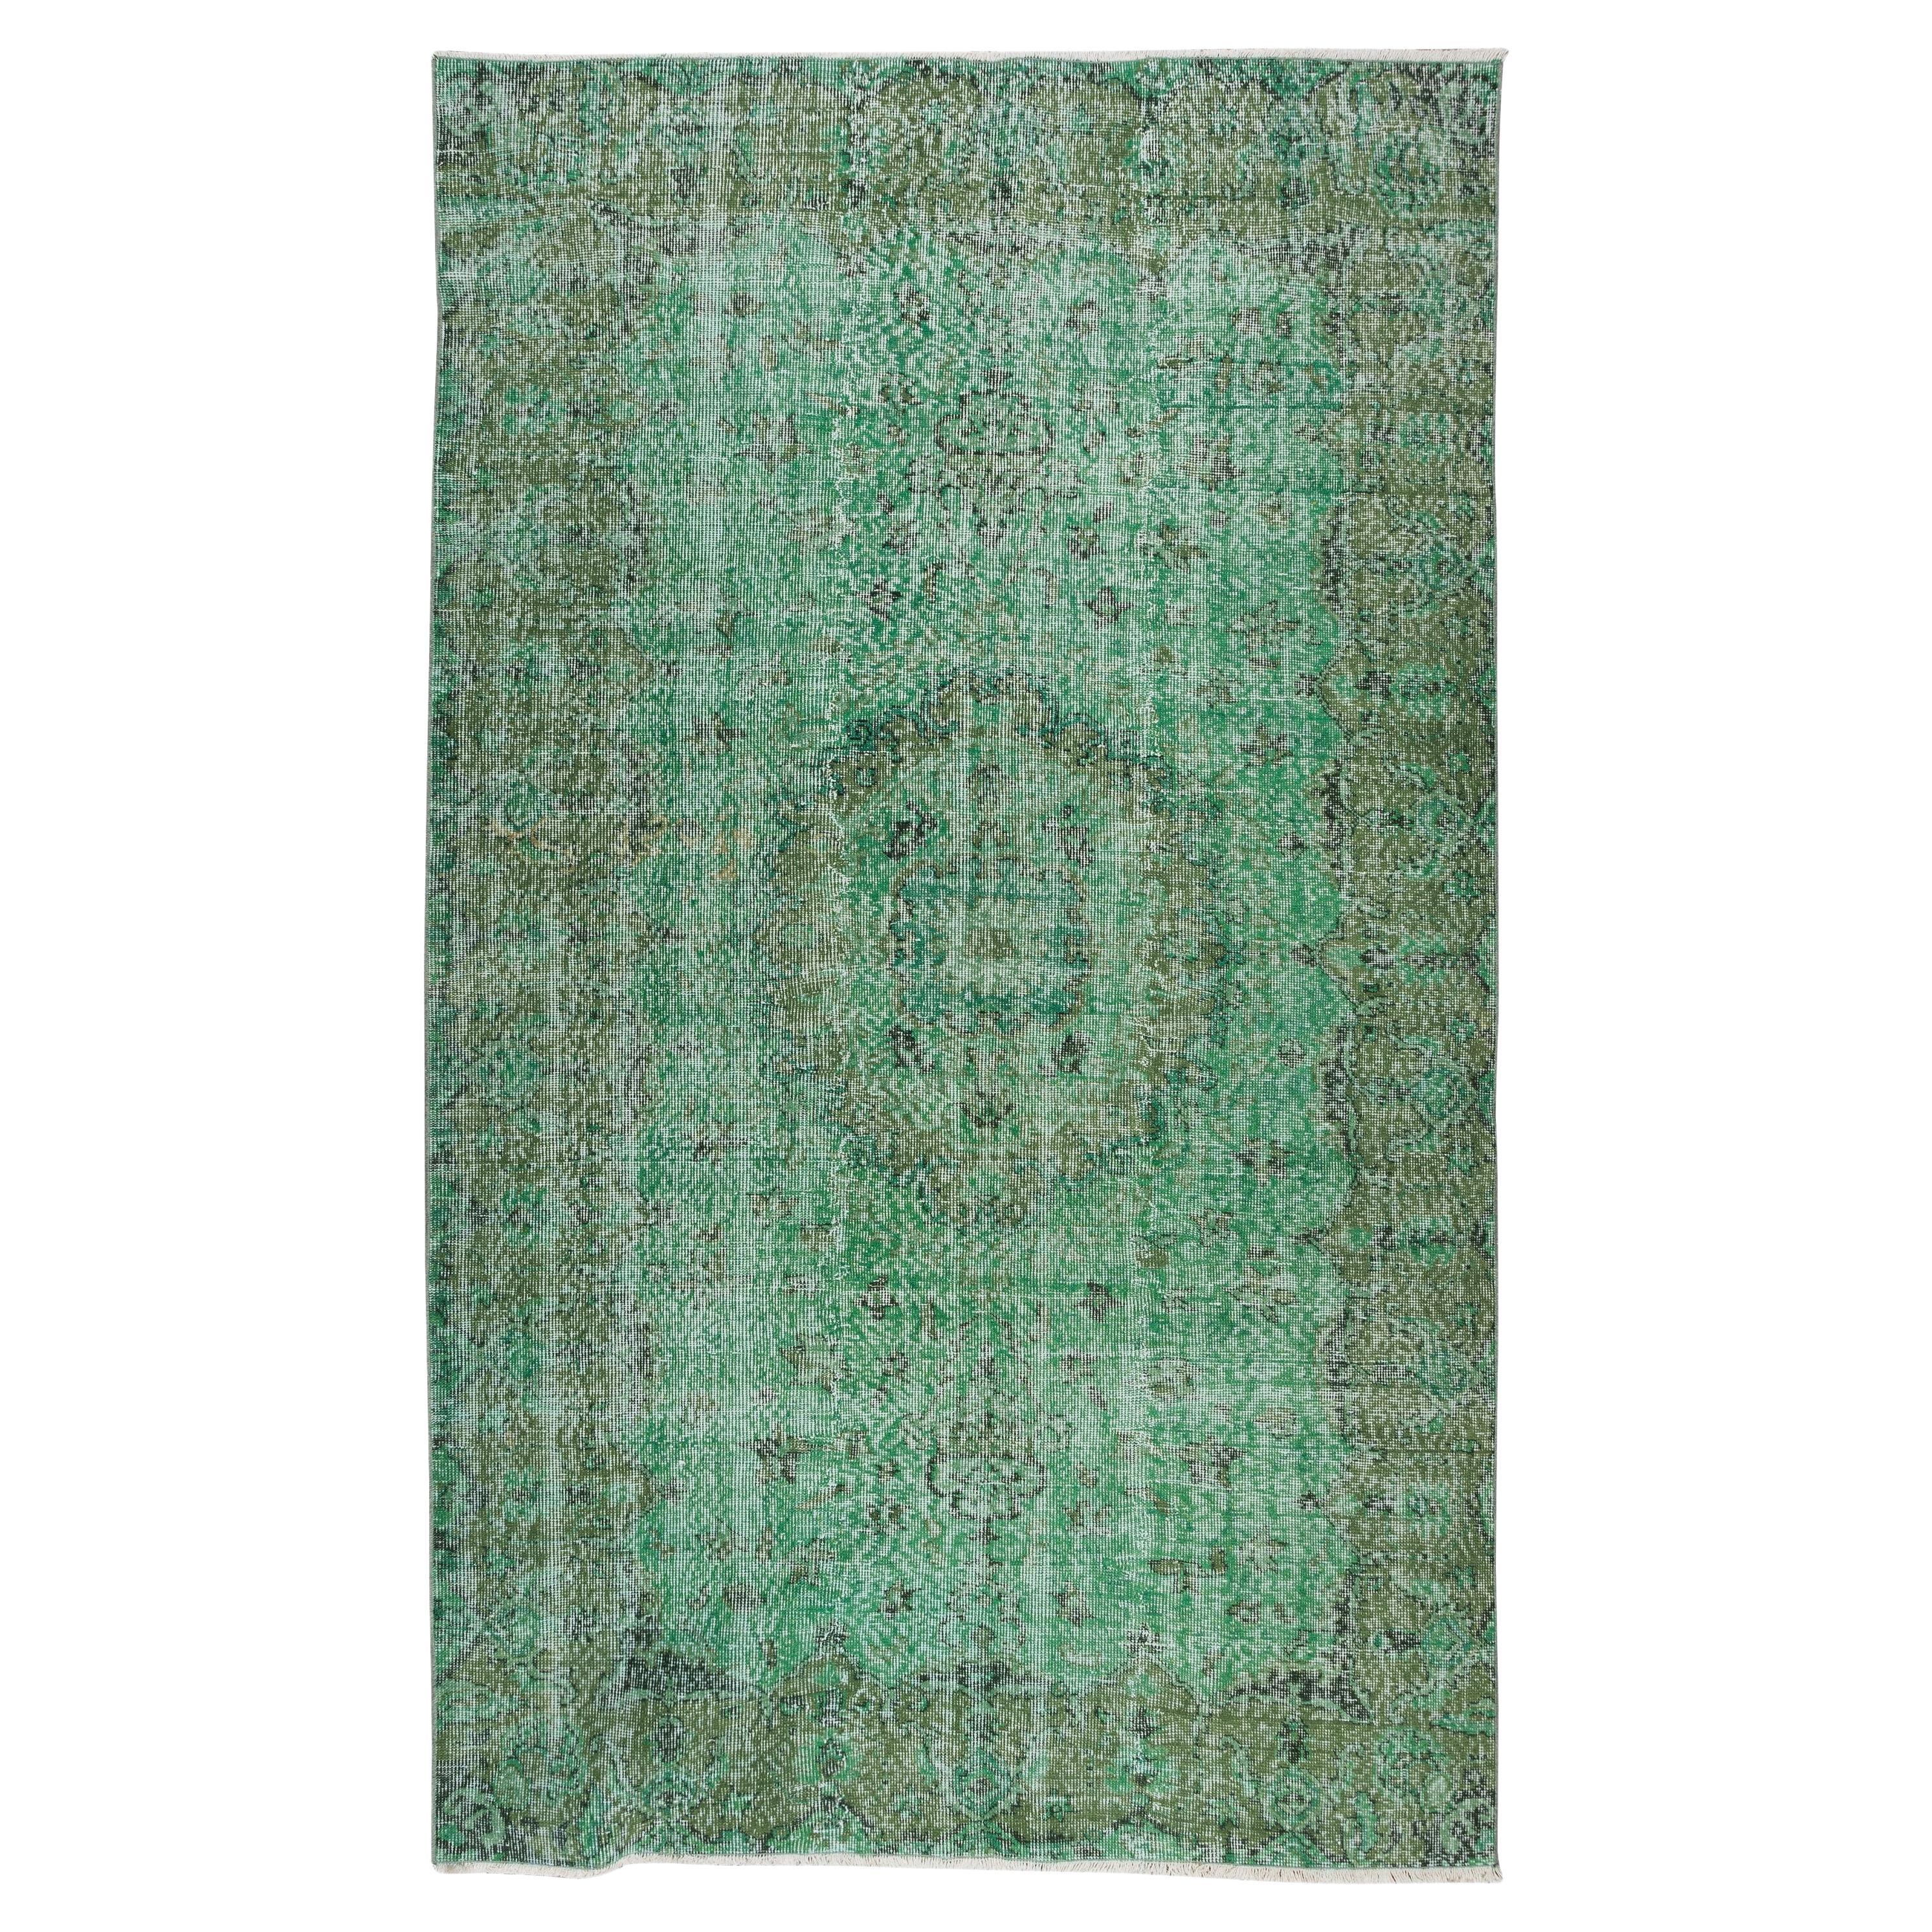 5.6x9,5 Ft Handgefertigter türkischer Vintage-Teppich in Grün, überzogen, für moderne Inneneinrichtung im Angebot